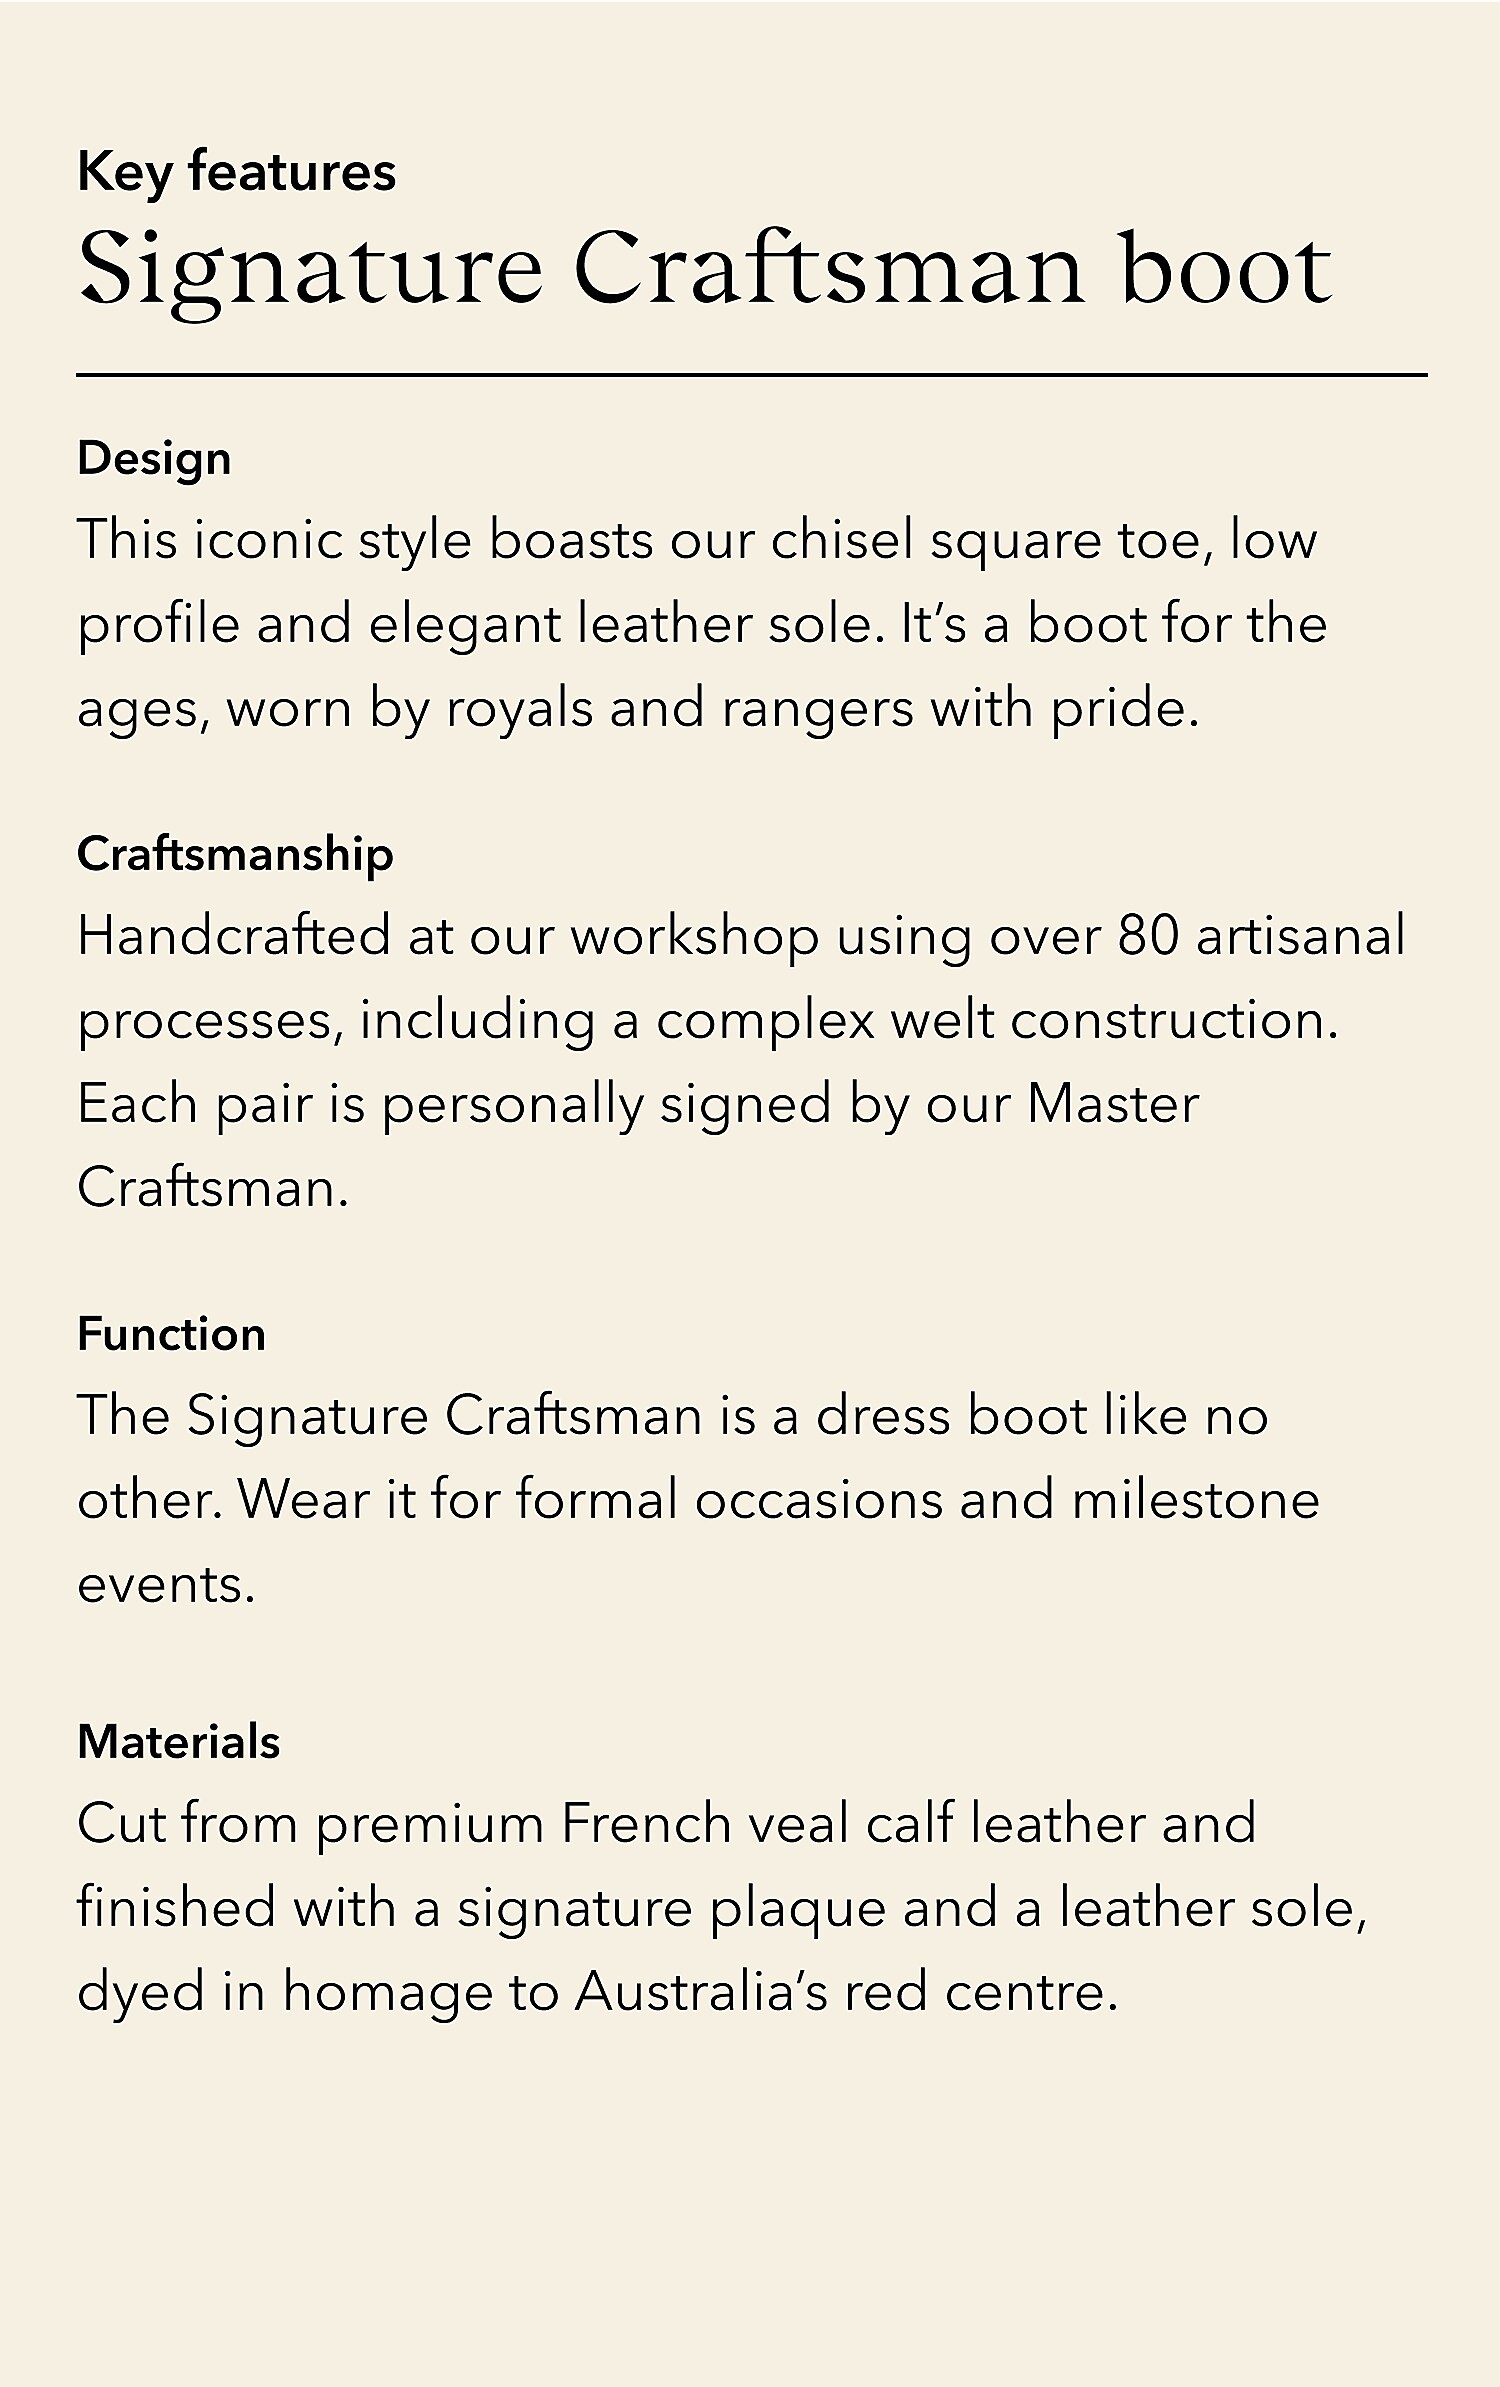 R.M.Williams - Signature Craftsman Dark Tan